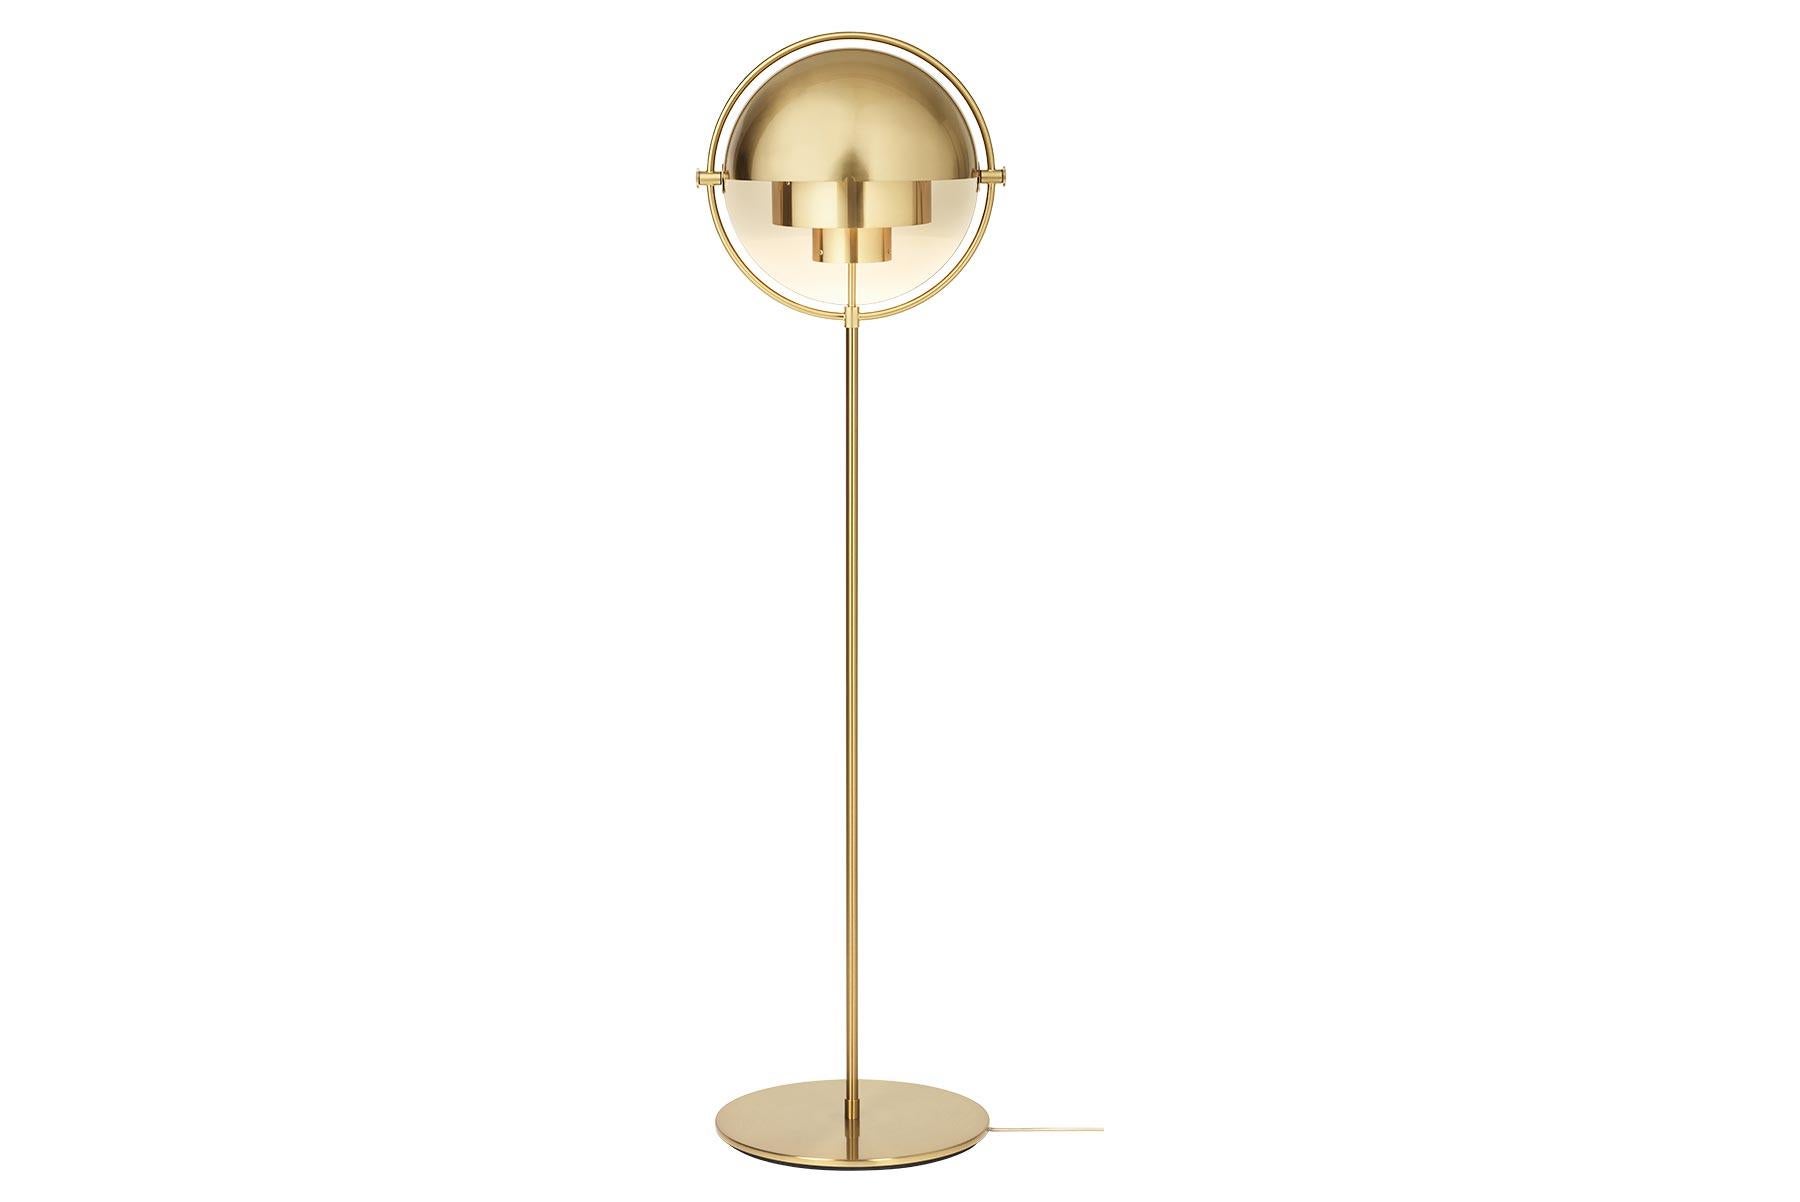 Le lampadaire Multi-Lite incarne l'âge d'or du design danois avec sa forme caractéristique de deux extérieurs opposés, des abat-jour mobiles qui permettent de créer une installation personnelle et une large gamme de valeurs d'éclairage dans une